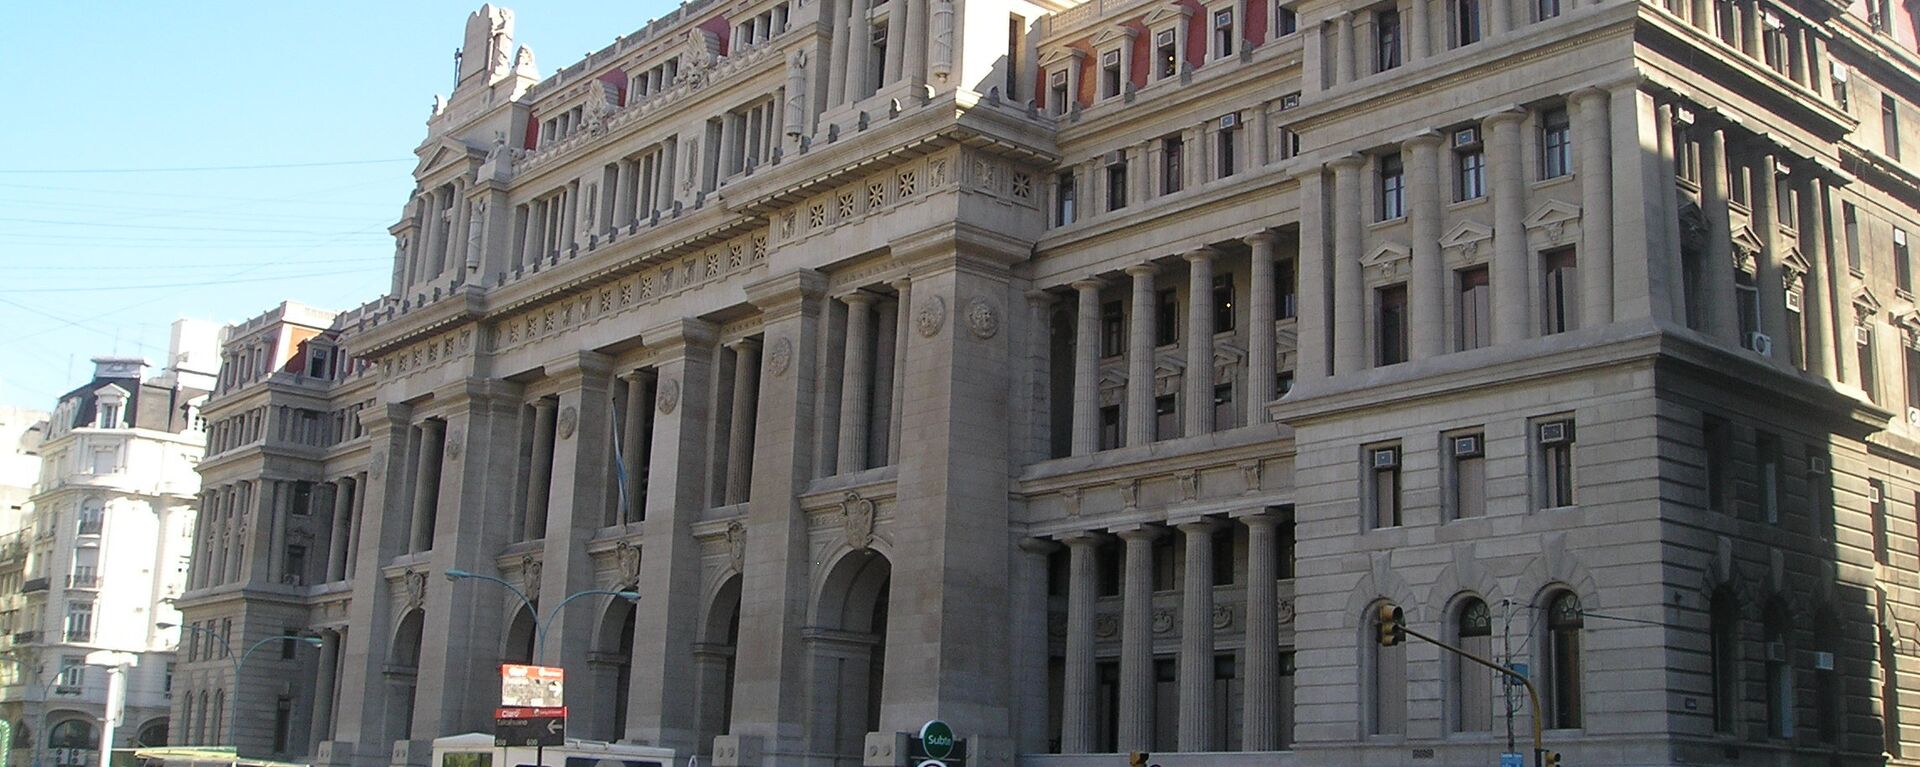 Palacio de Justicia, sede de la Corte Suprema de Justicia de Argentina - Sputnik Mundo, 1920, 27.04.2022